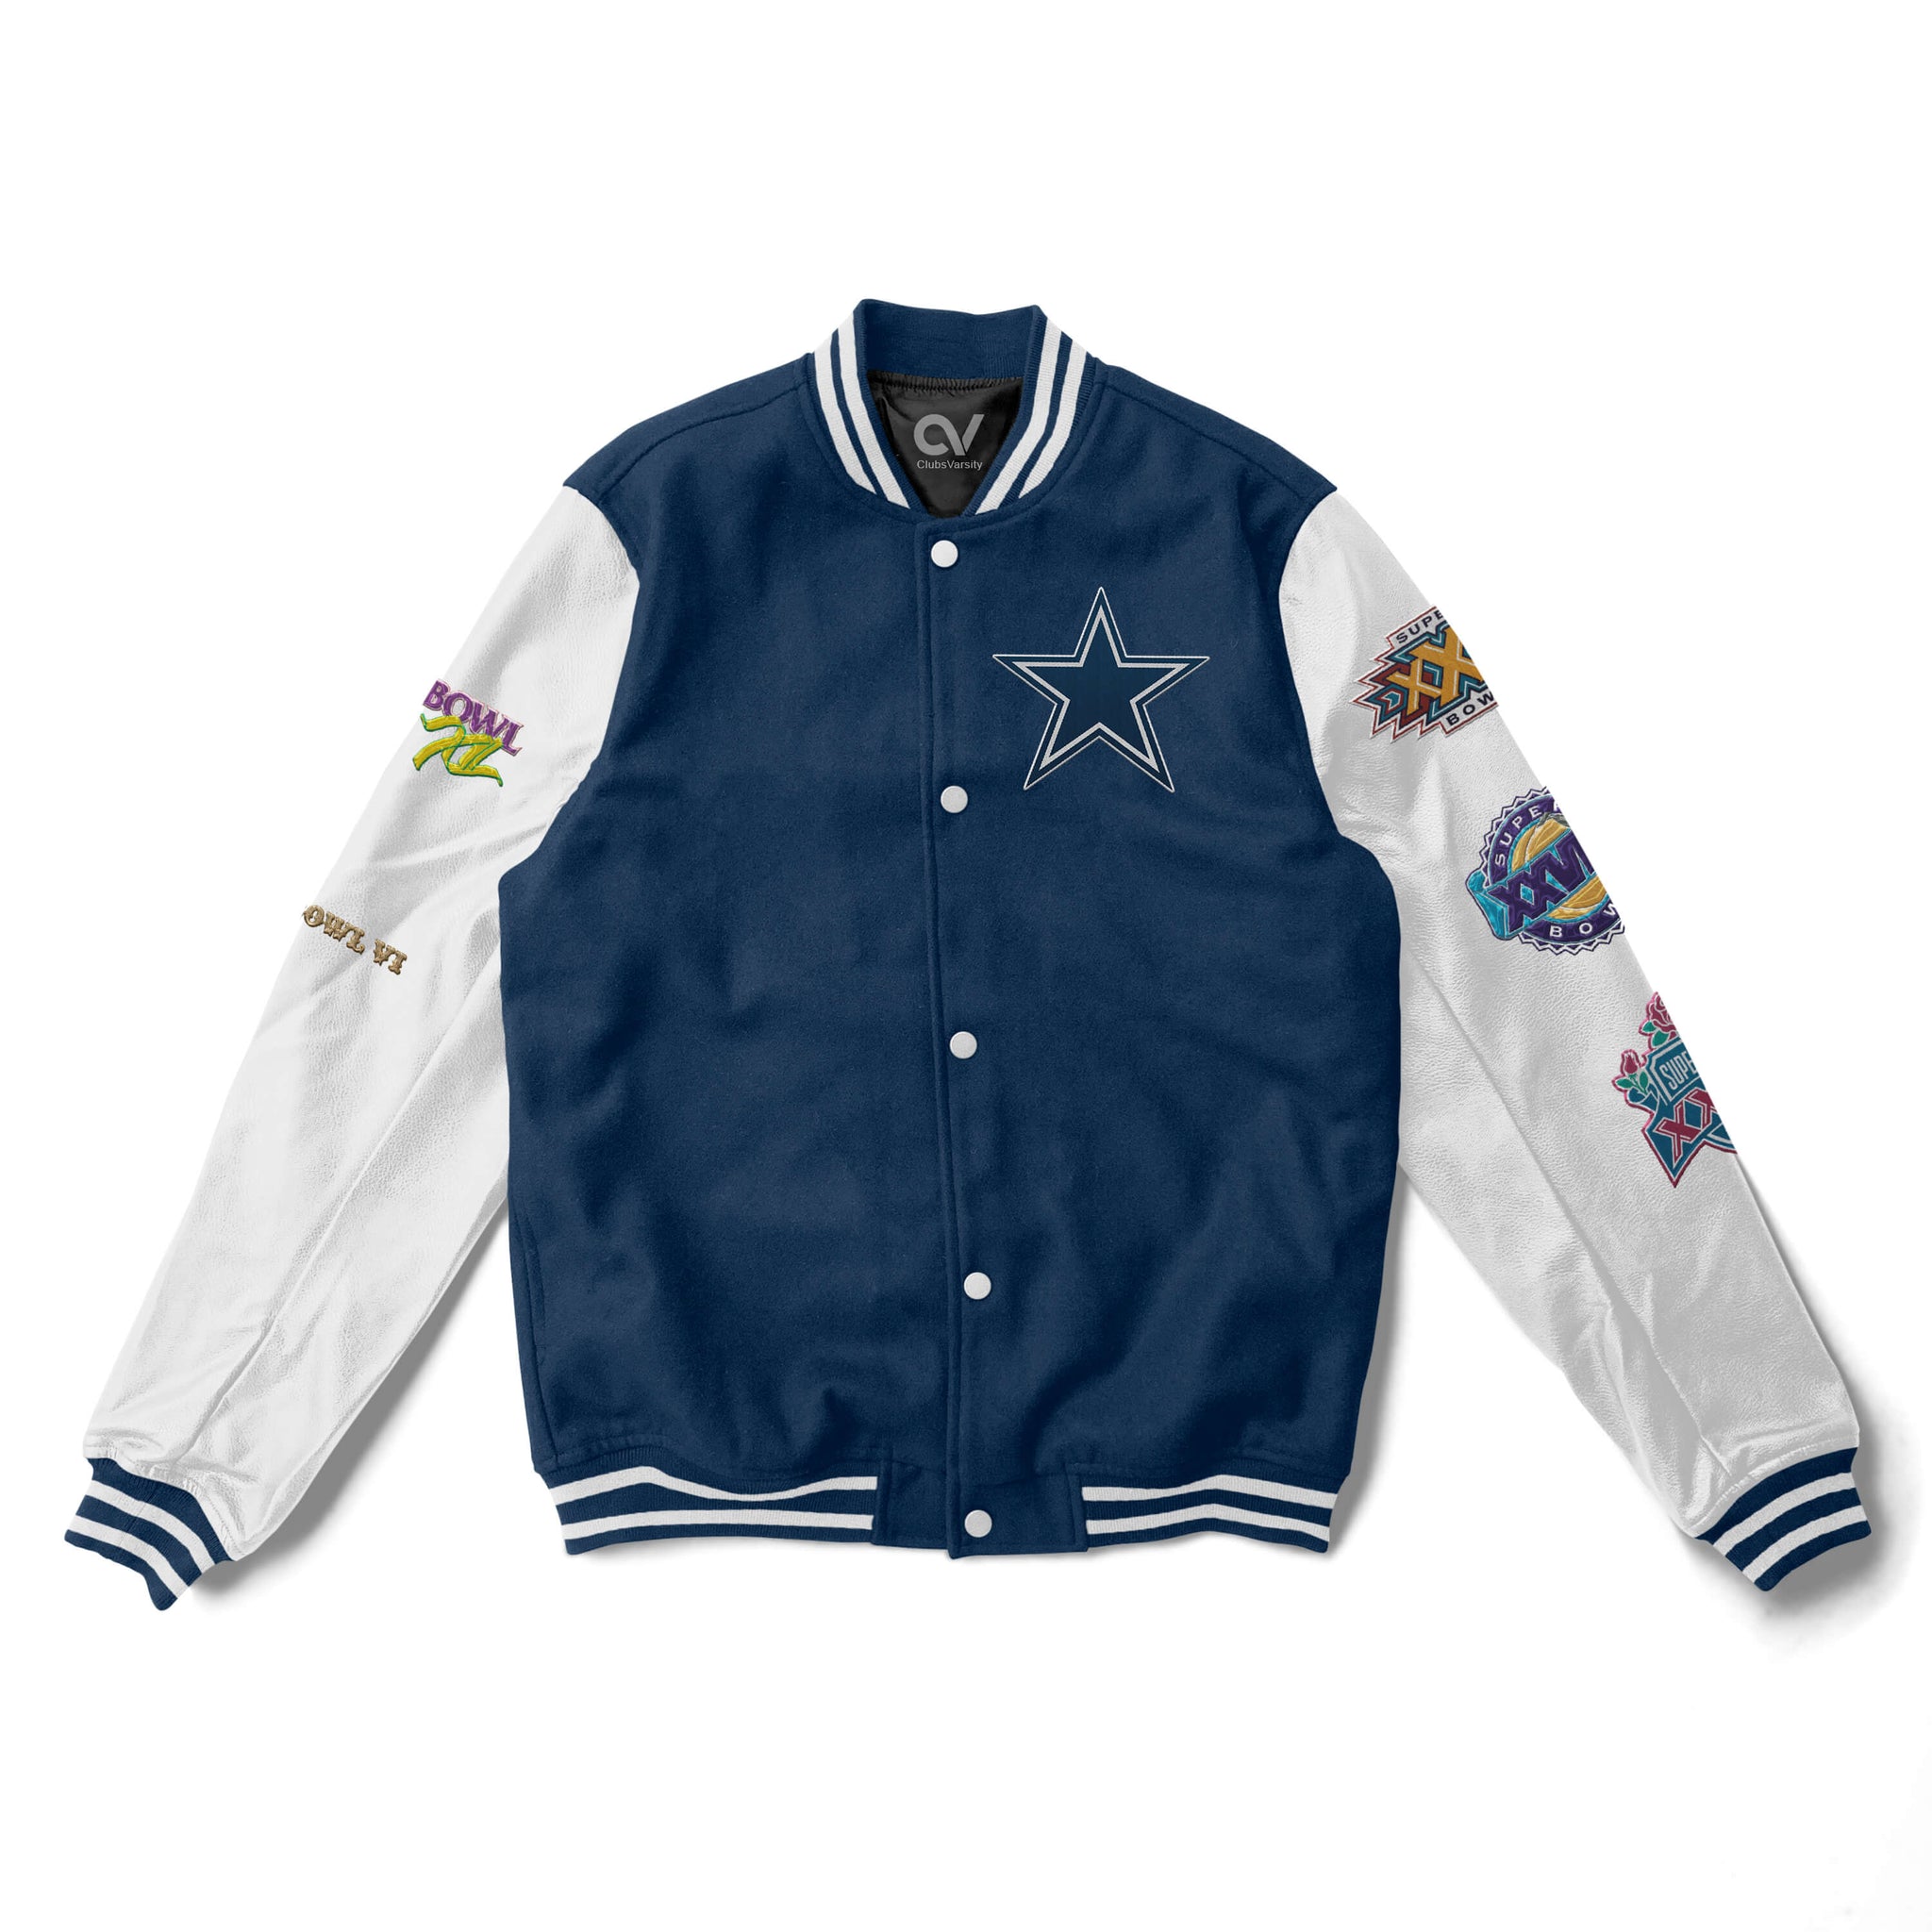 Dallas Cowboys Varsity Jacket -  5x Champions - NFL Letterman Jacket